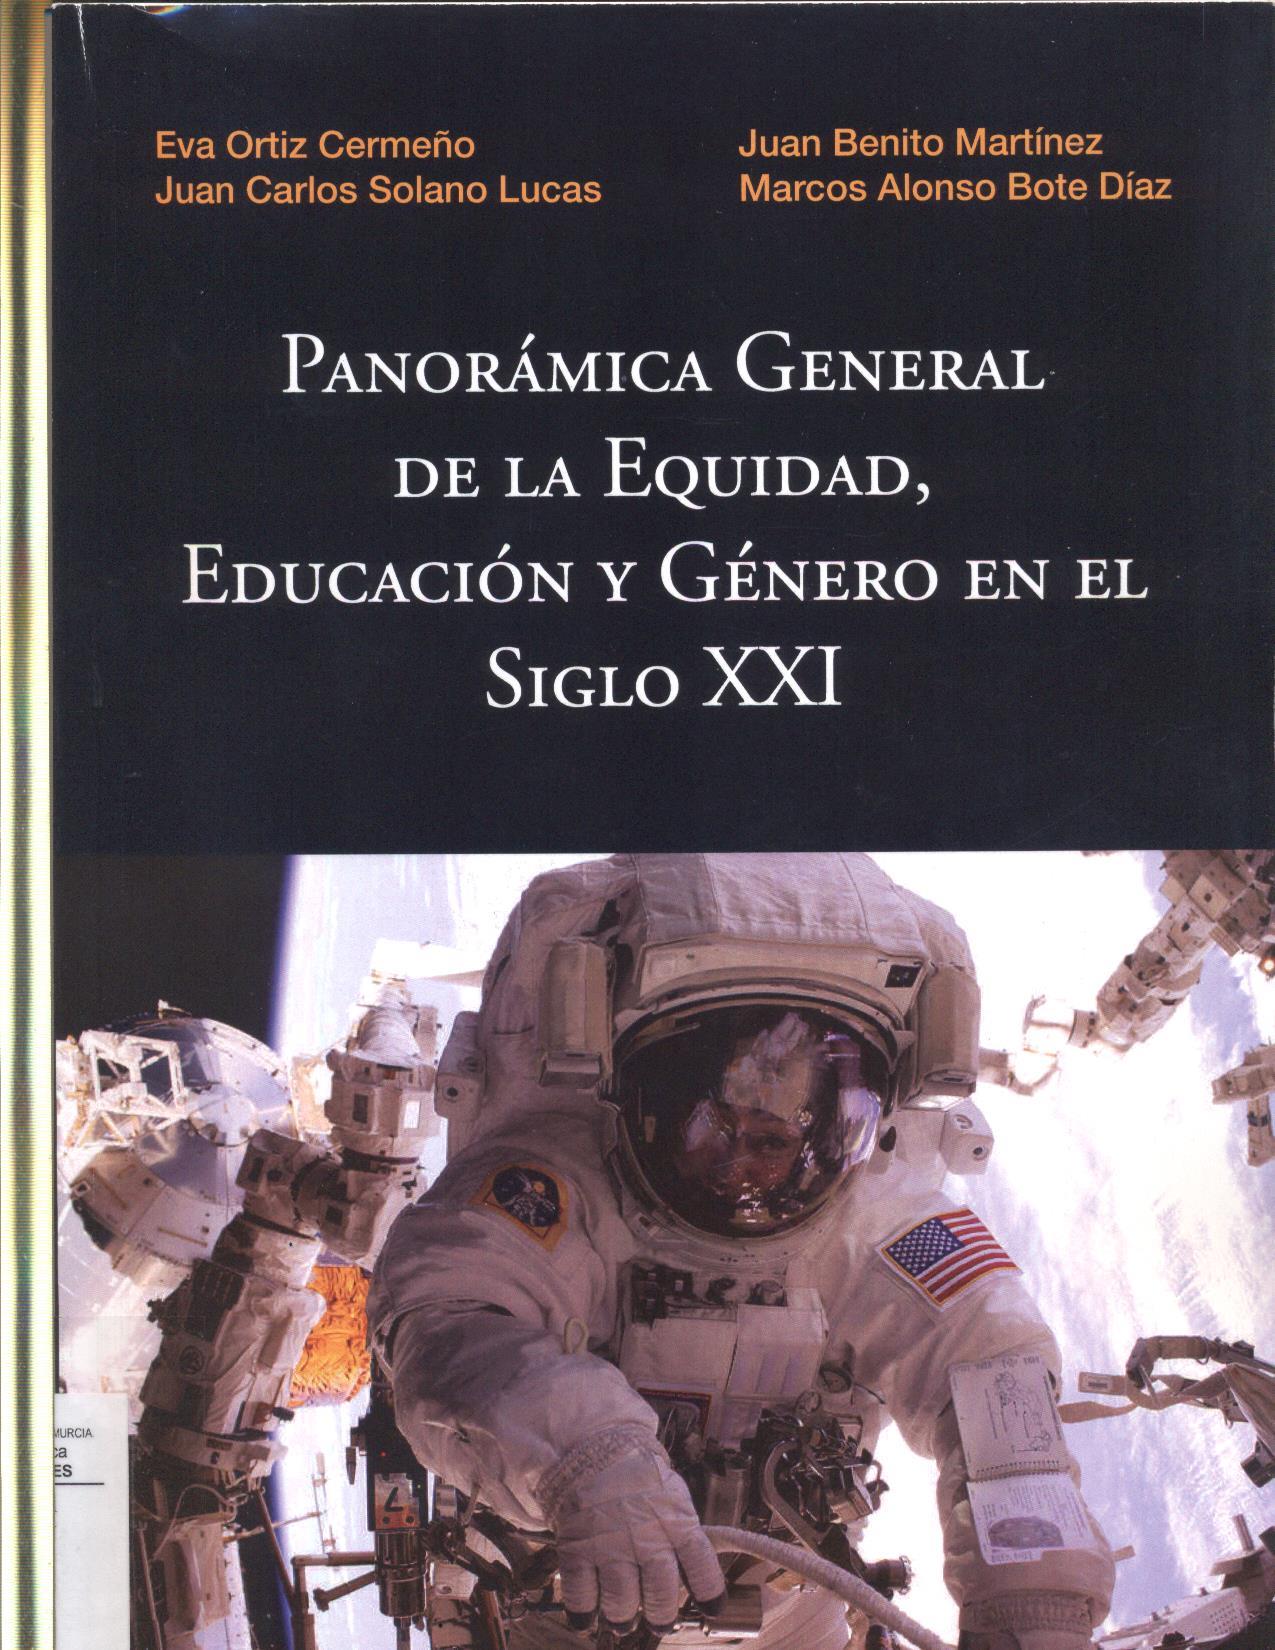 Imagen de portada del libro Panorámica general de la equidad, educación y género en el siglo XXI